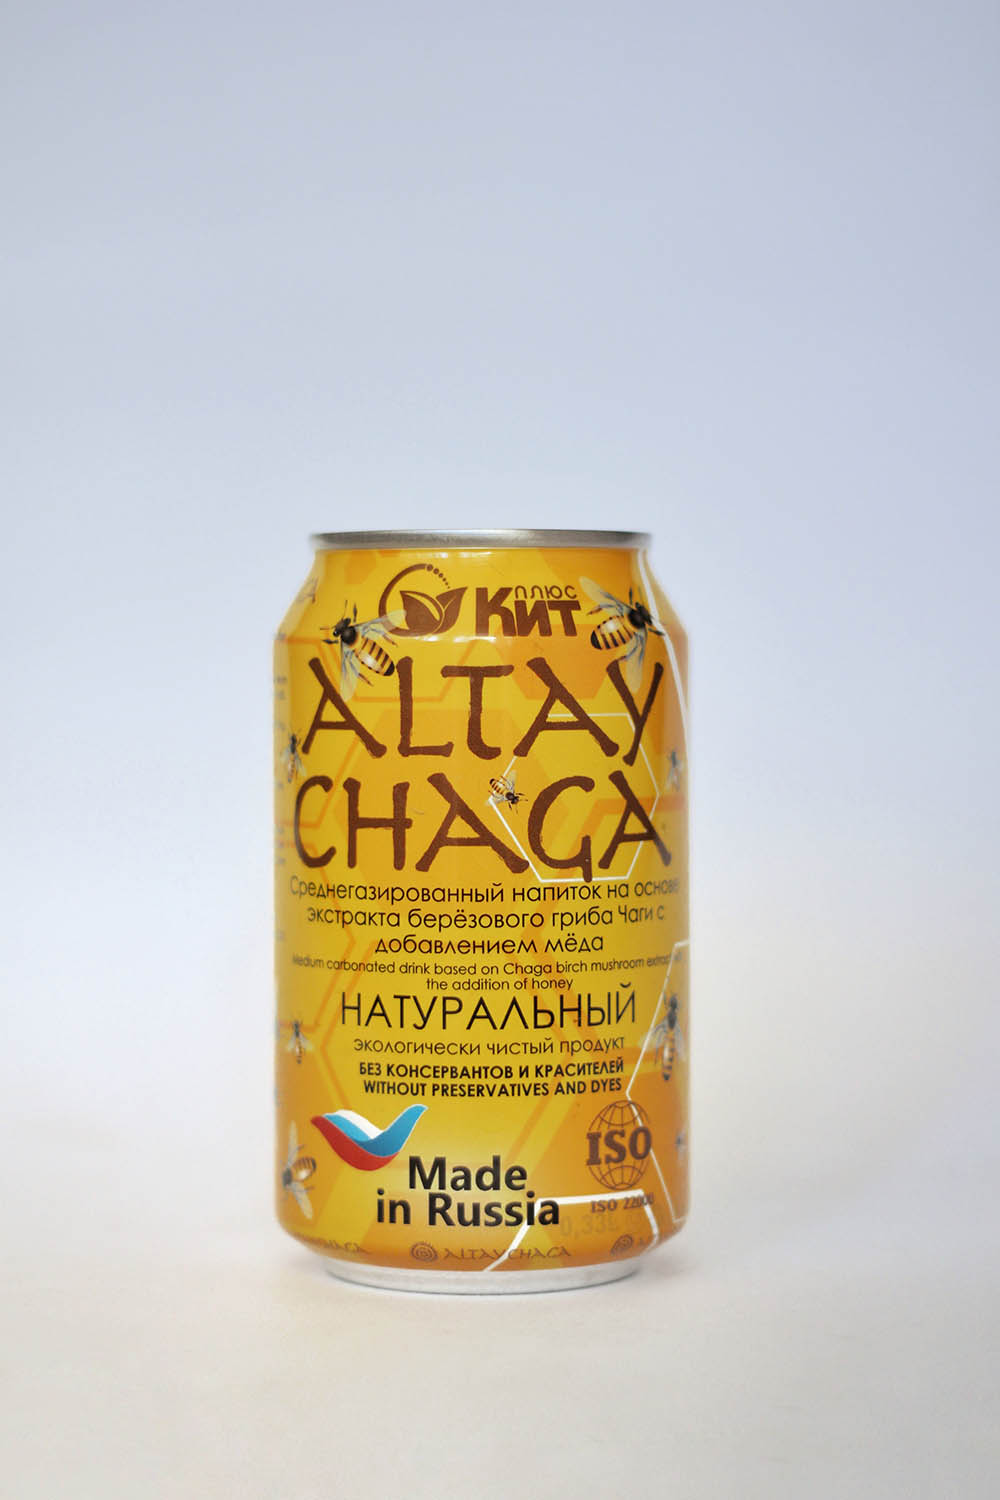 Среднегазированный напиток "ALTAYCHAGA" на основе экстракта берёзового гриба чаги с добавлением мёда.